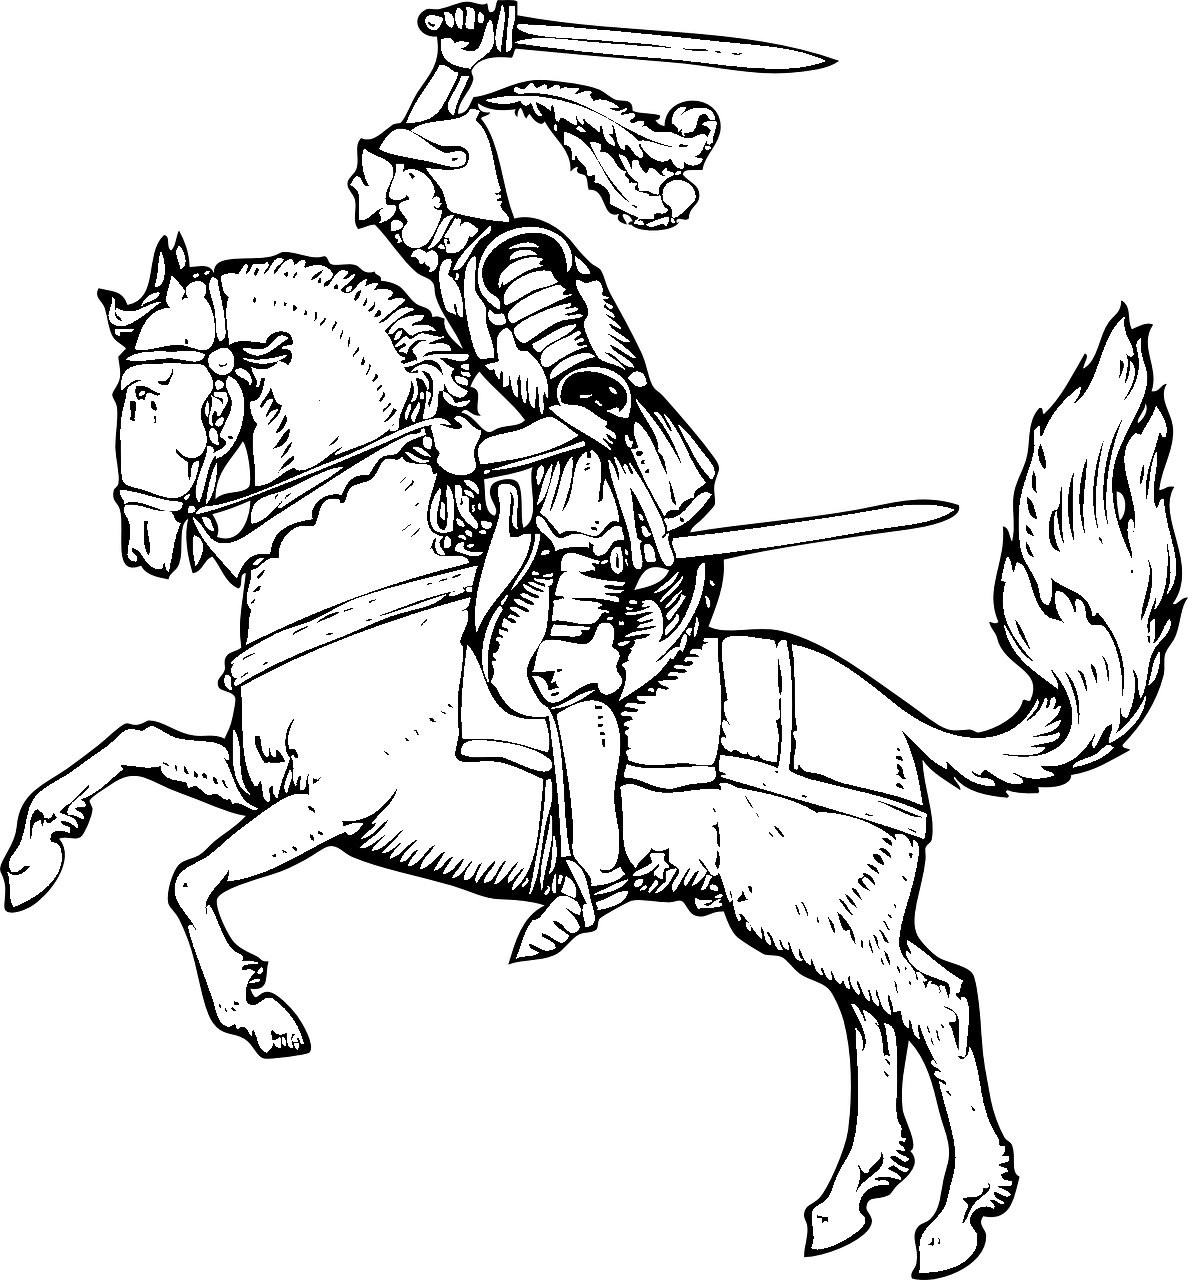 صفحة التلوين للخيول والفارس في القرون الوسطى في المعركة